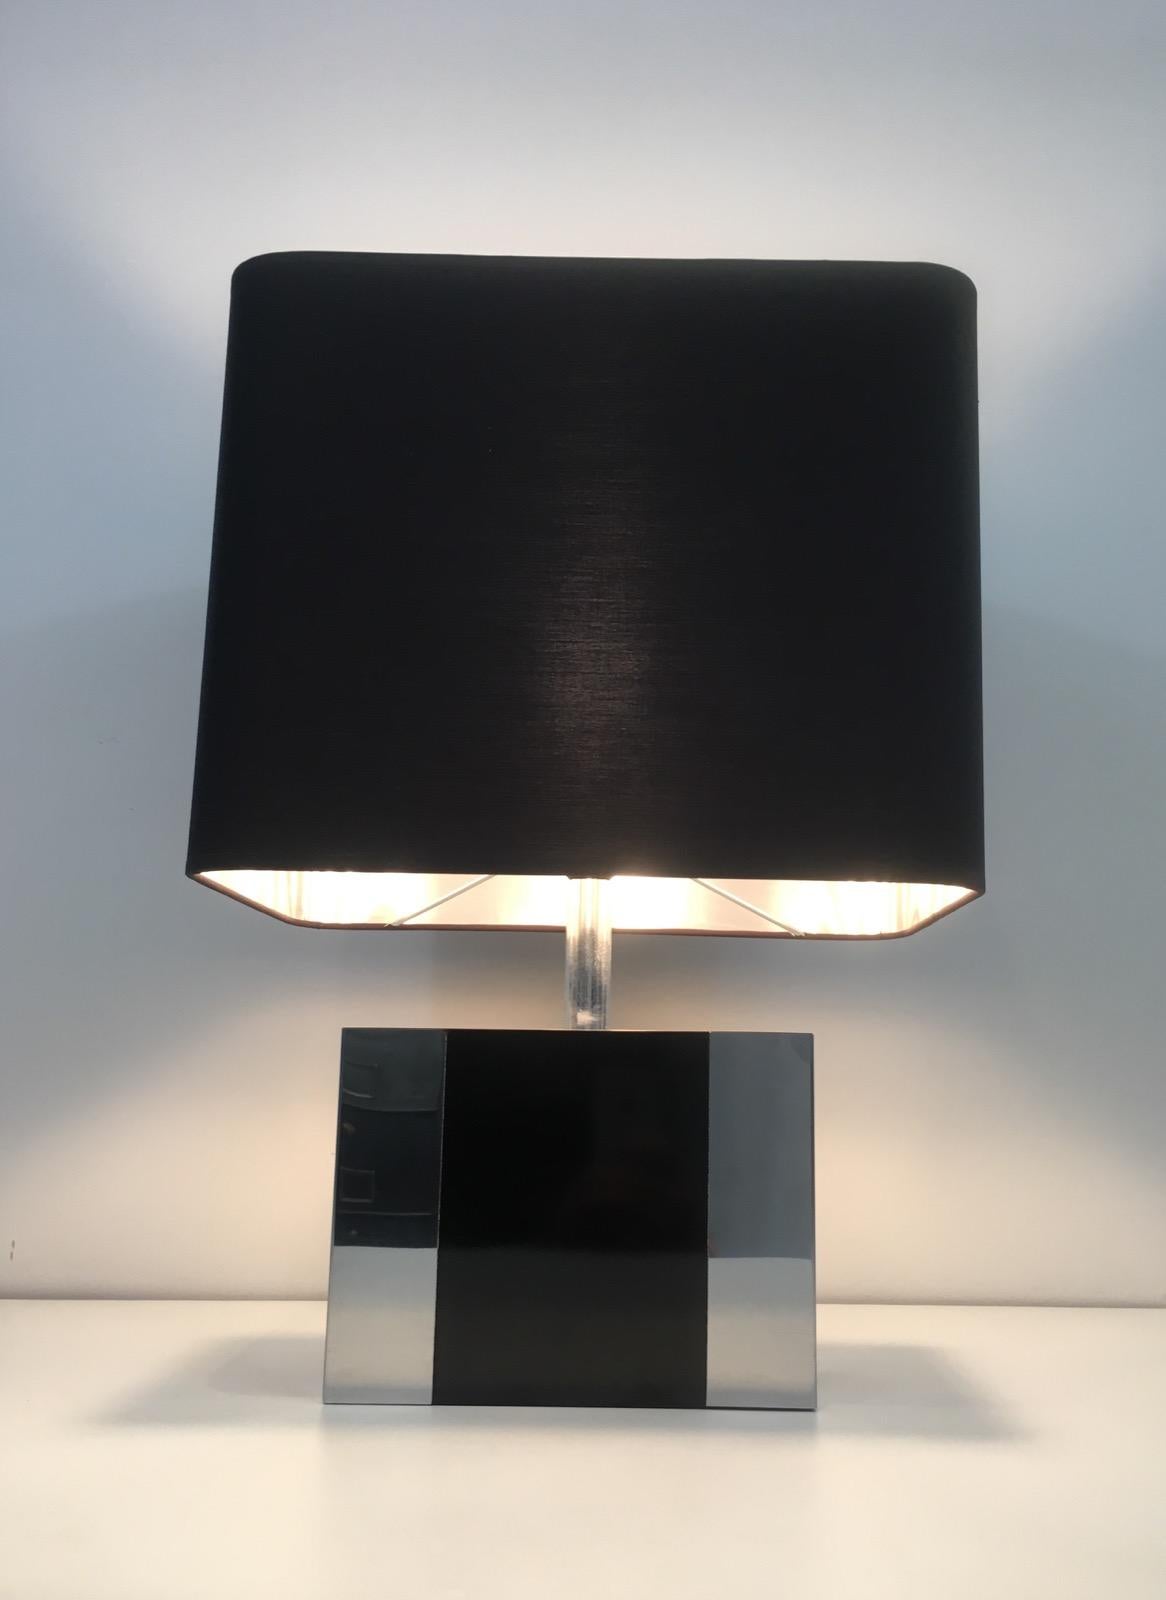 Cette jolie lampe de table est fabriquée en chrome et en chrome laqué noir. La lampe a un bel abat-jour personnalisé en shintz noir, argenté à l'intérieur. Il s'agit d'une œuvre française, datant d'environ 1970.